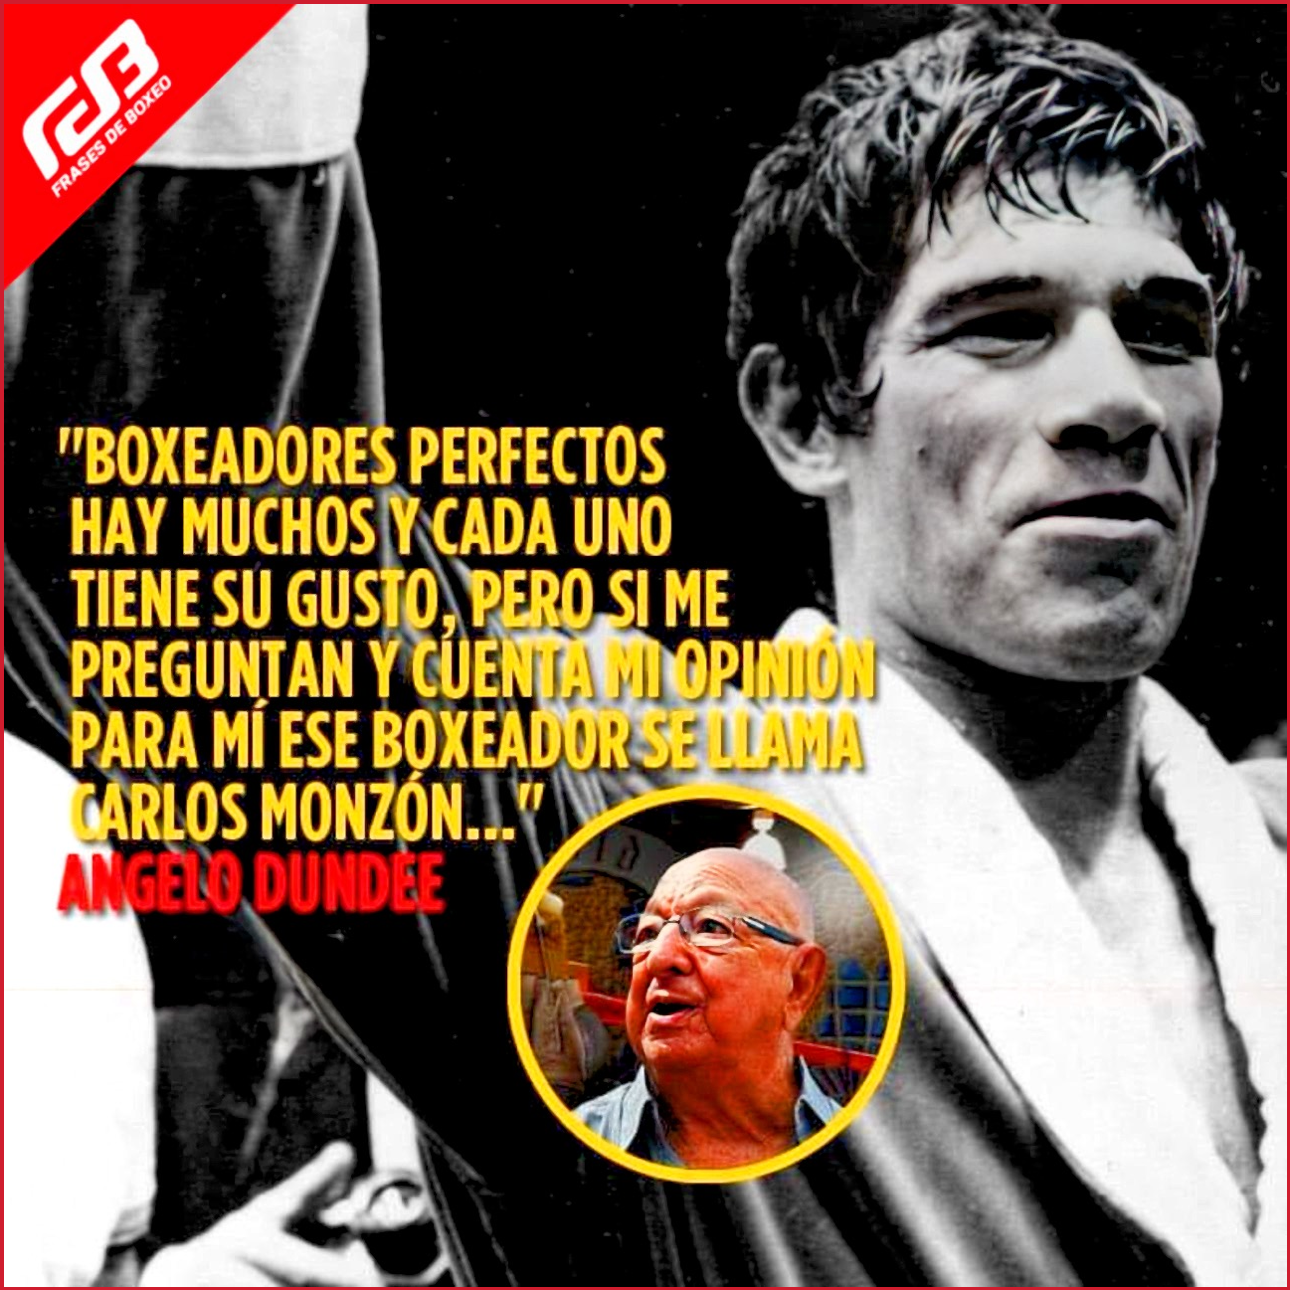 Amilcar Brusa sobre Carlos Monzón (Frases de Boxeo).